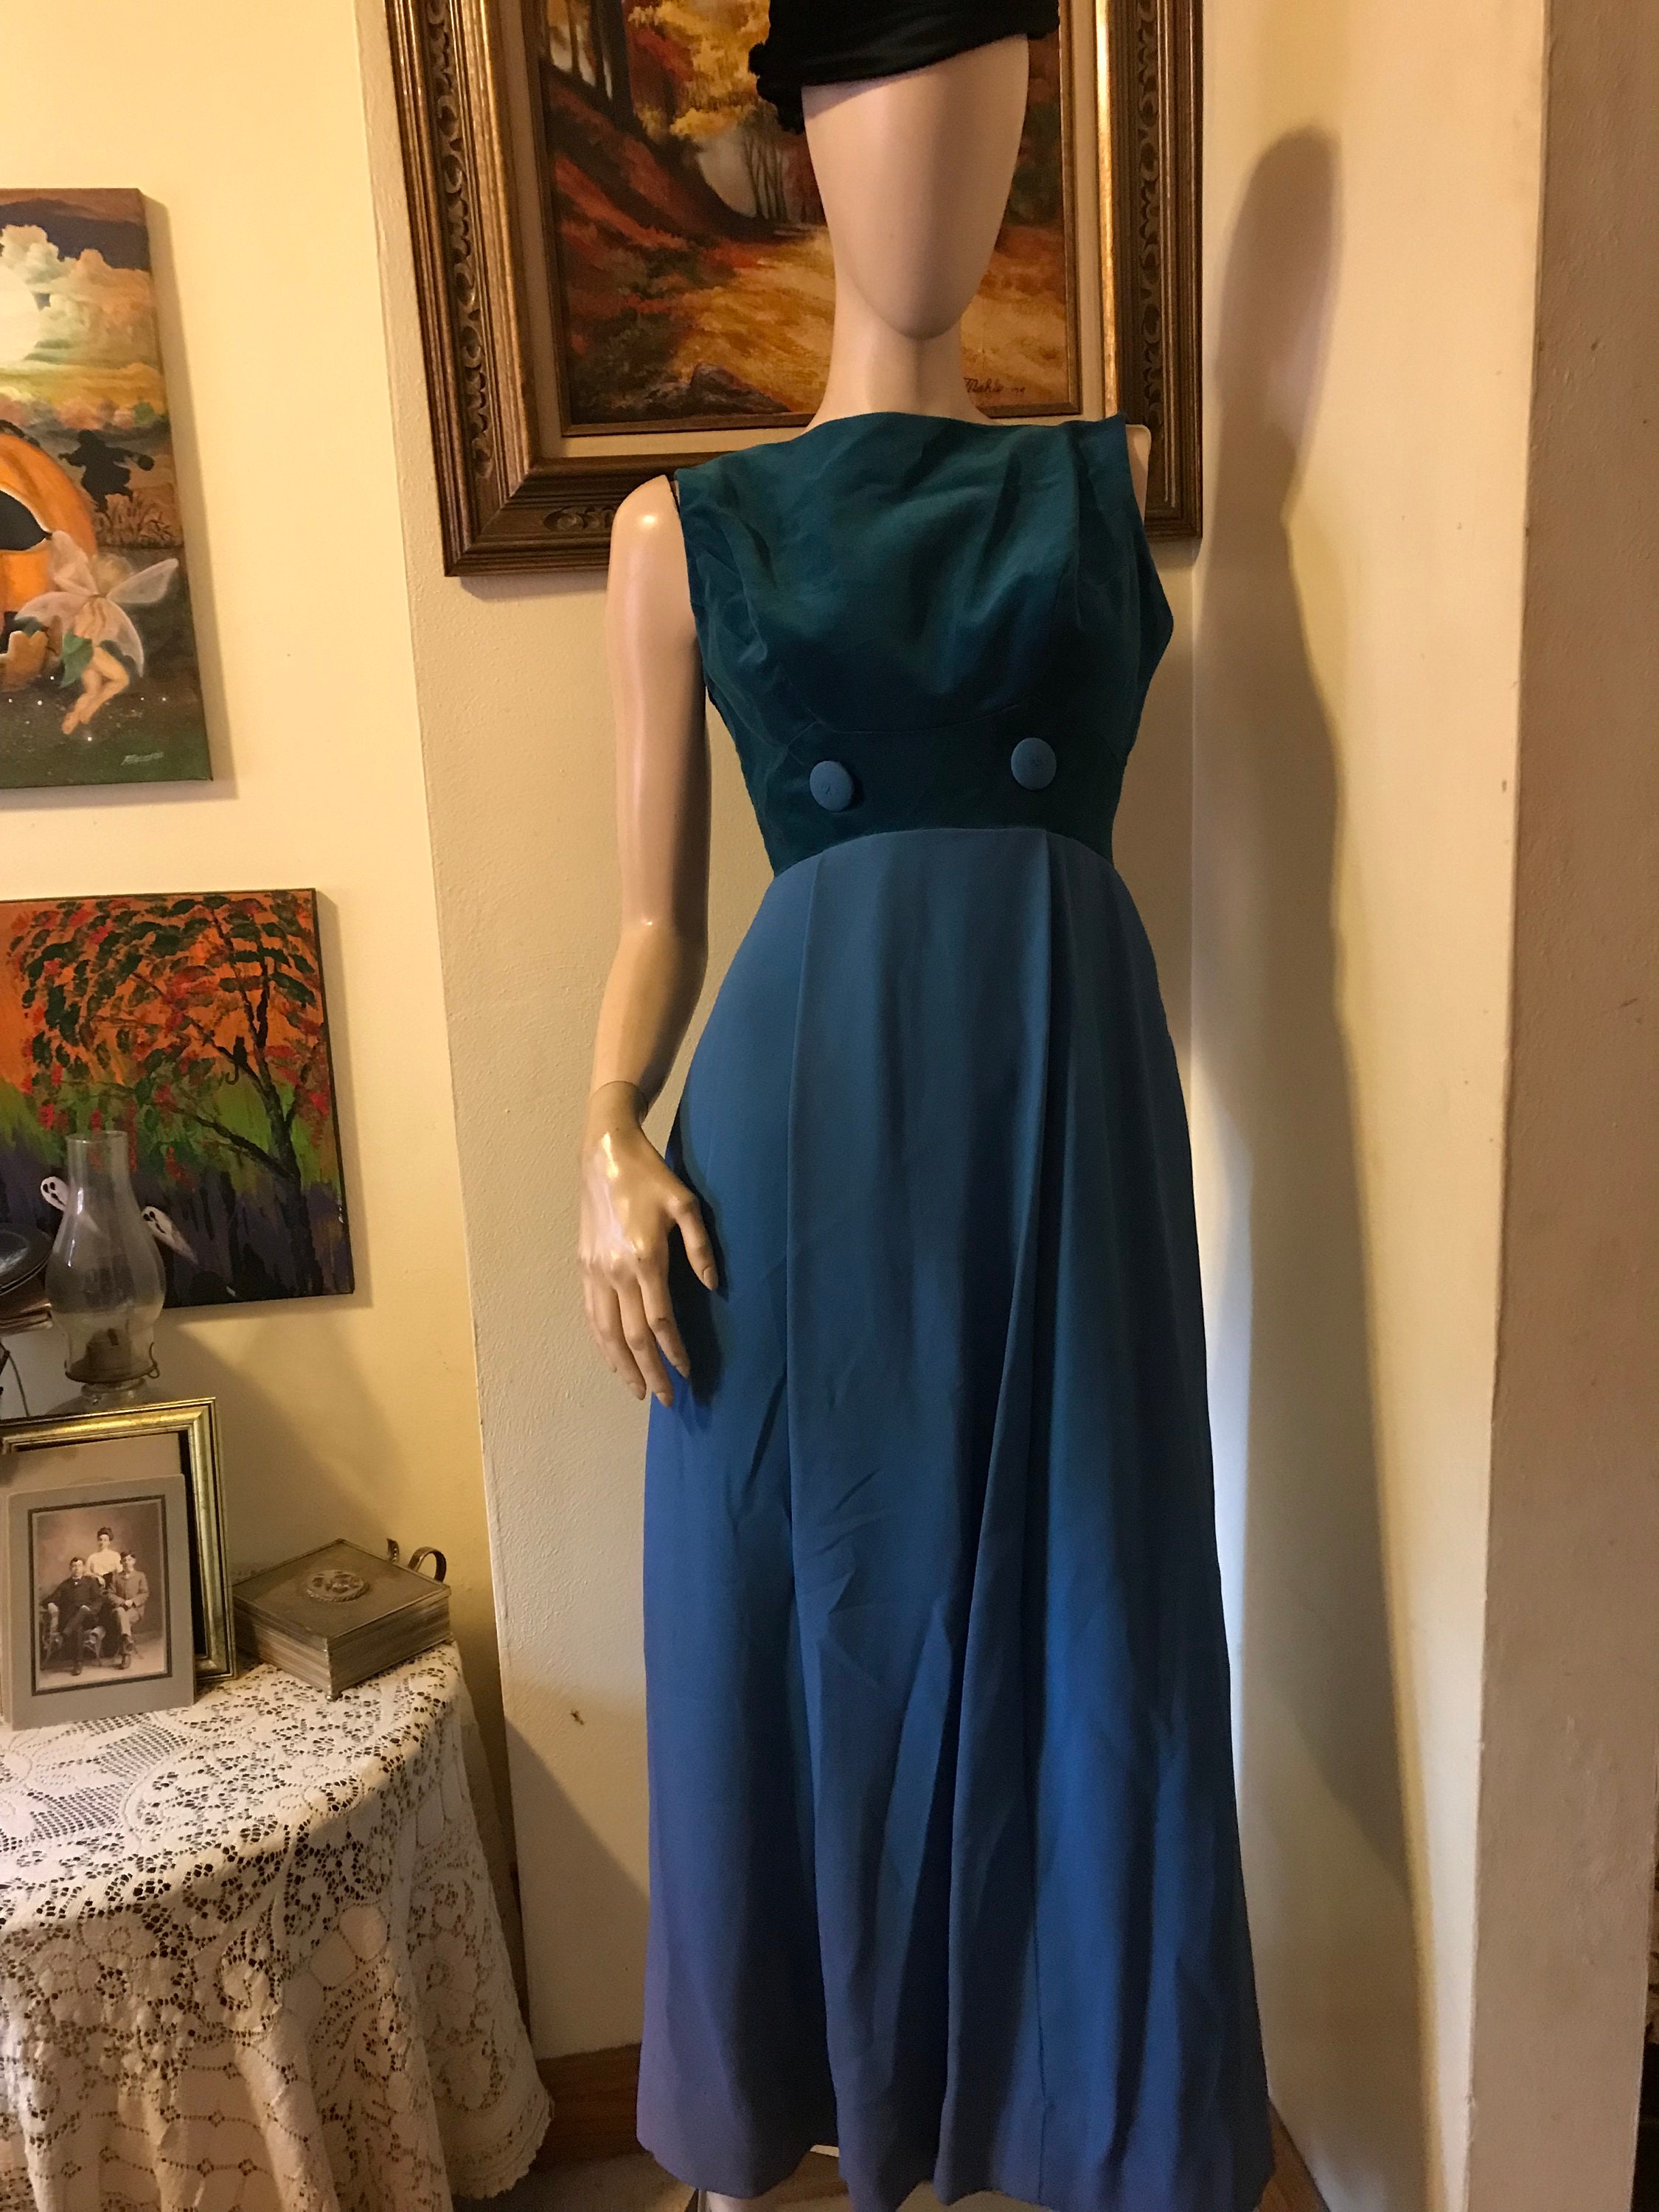 Vintage 1960s Aqua Blue Alyce Designs High Neck Formal Dress. 